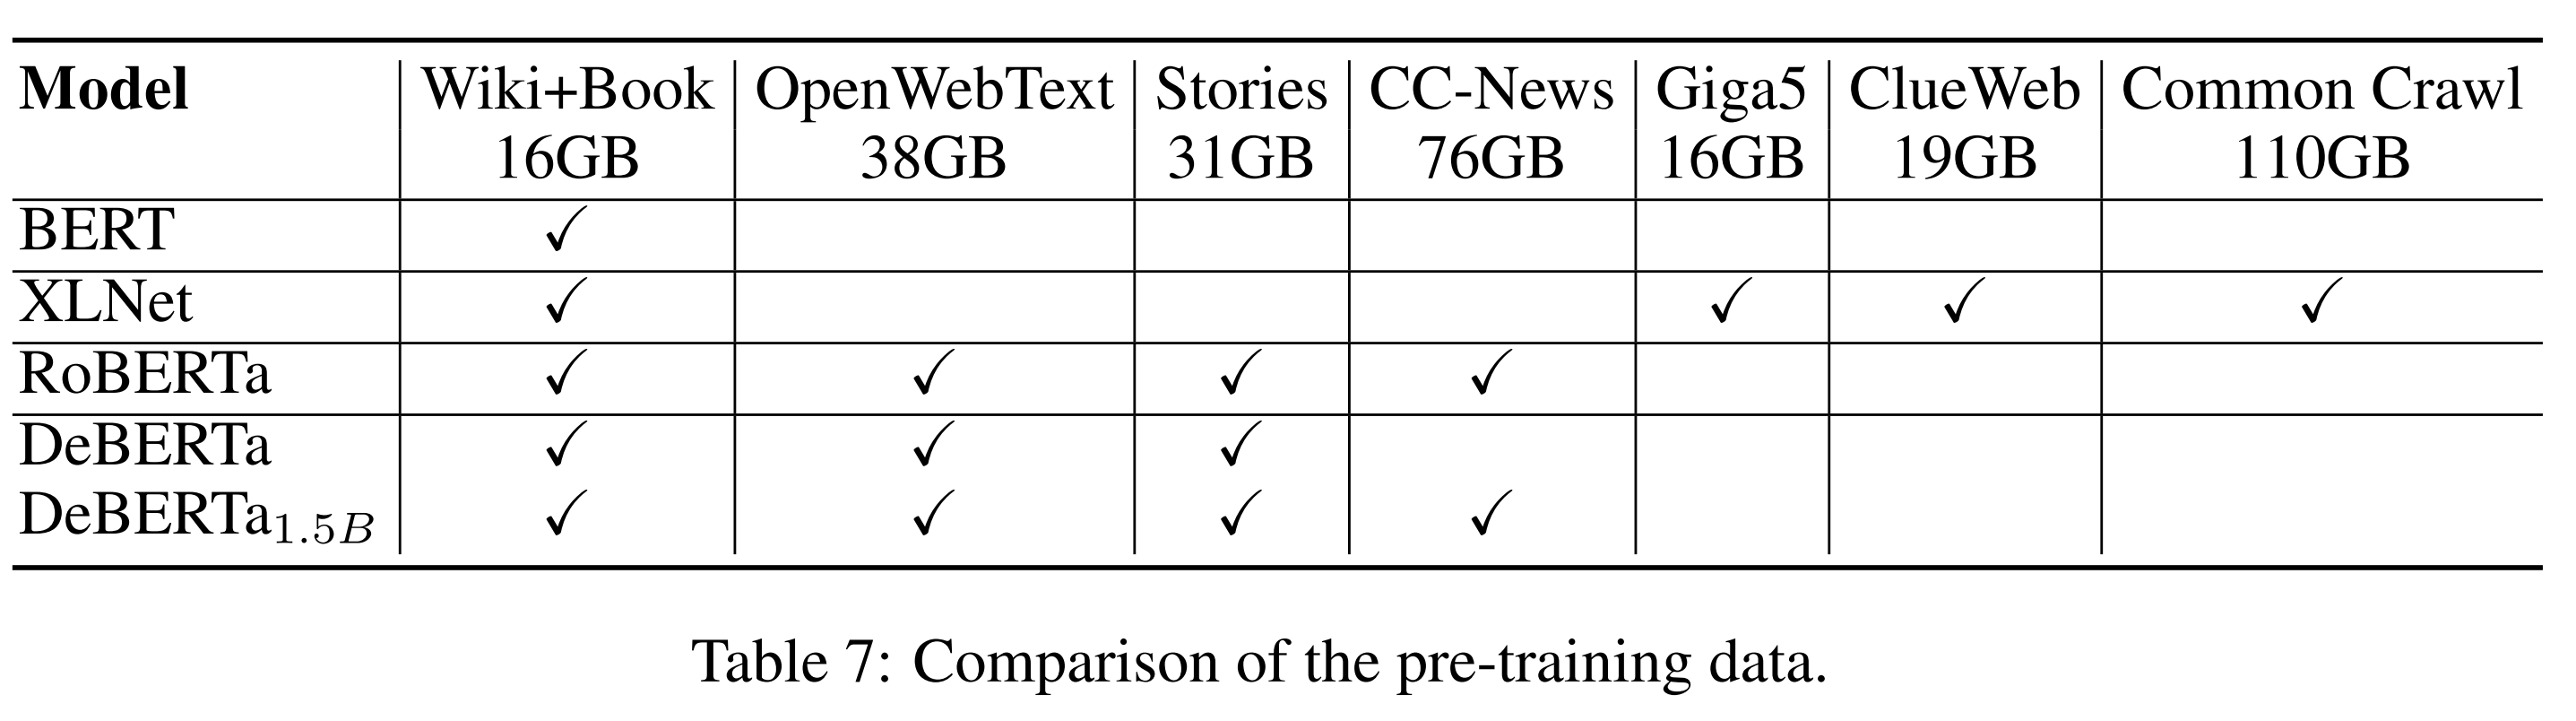 Deberta论文里不同预训练模型使用数据的对比